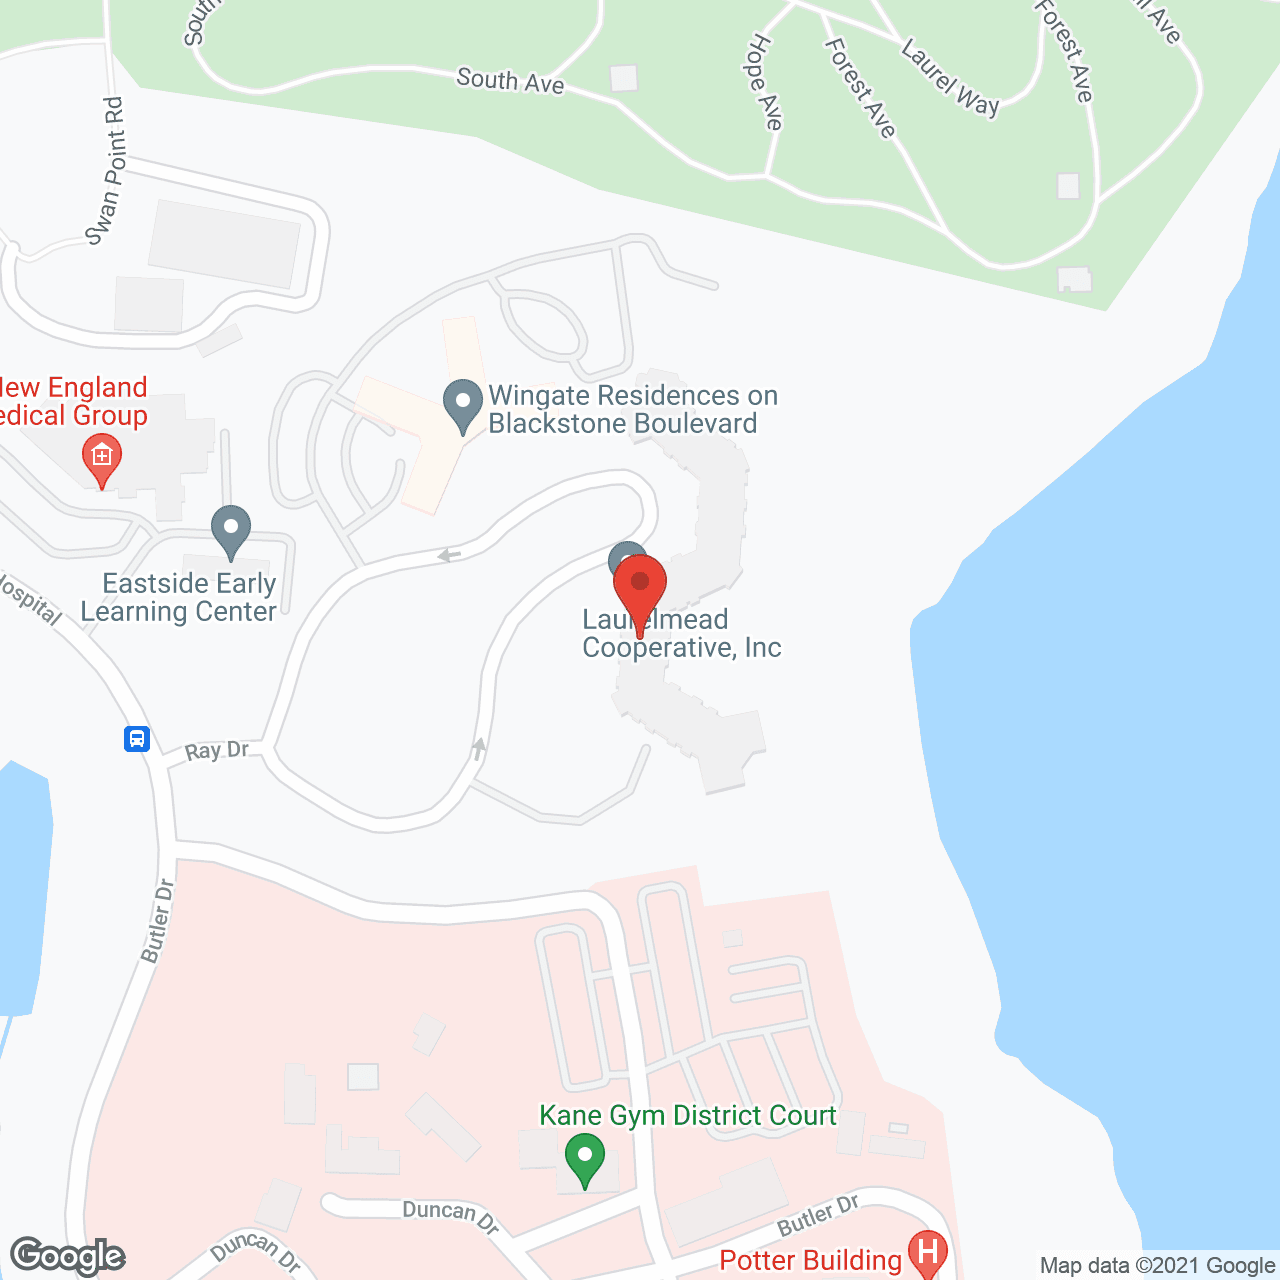 Laurelmead Cooperative in google map